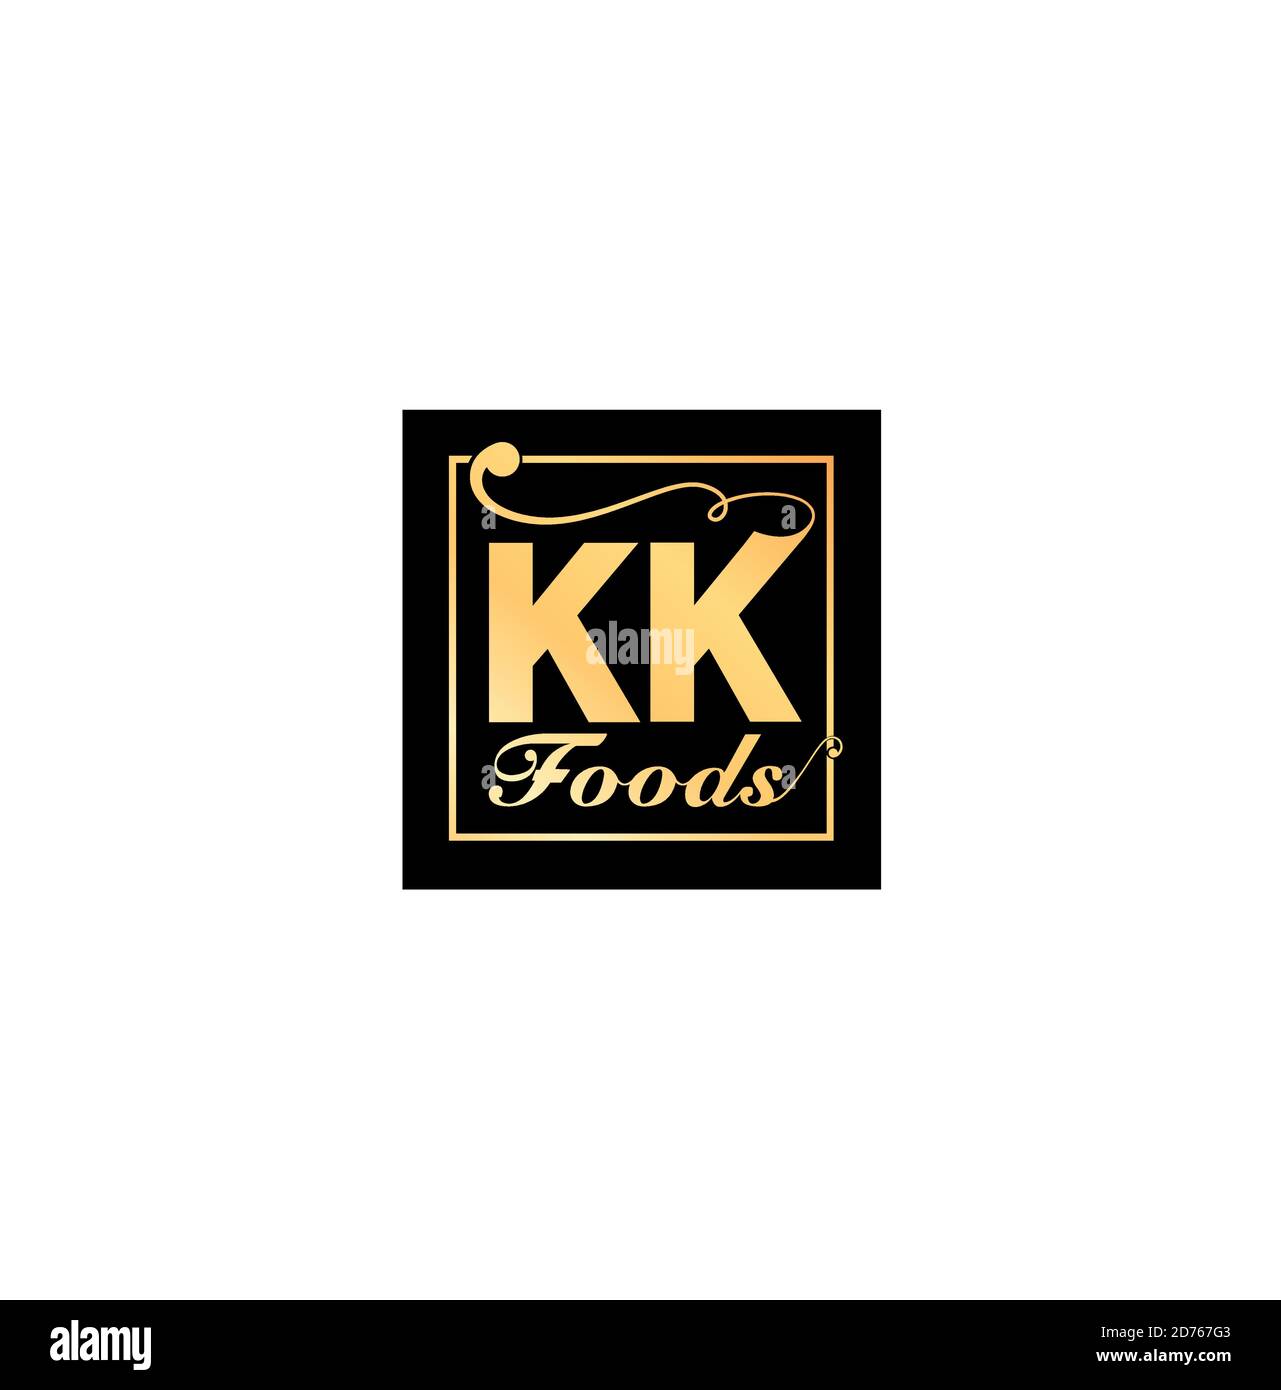 Logo KK Foods con colore dorato su nero. Illustrazione Vettoriale